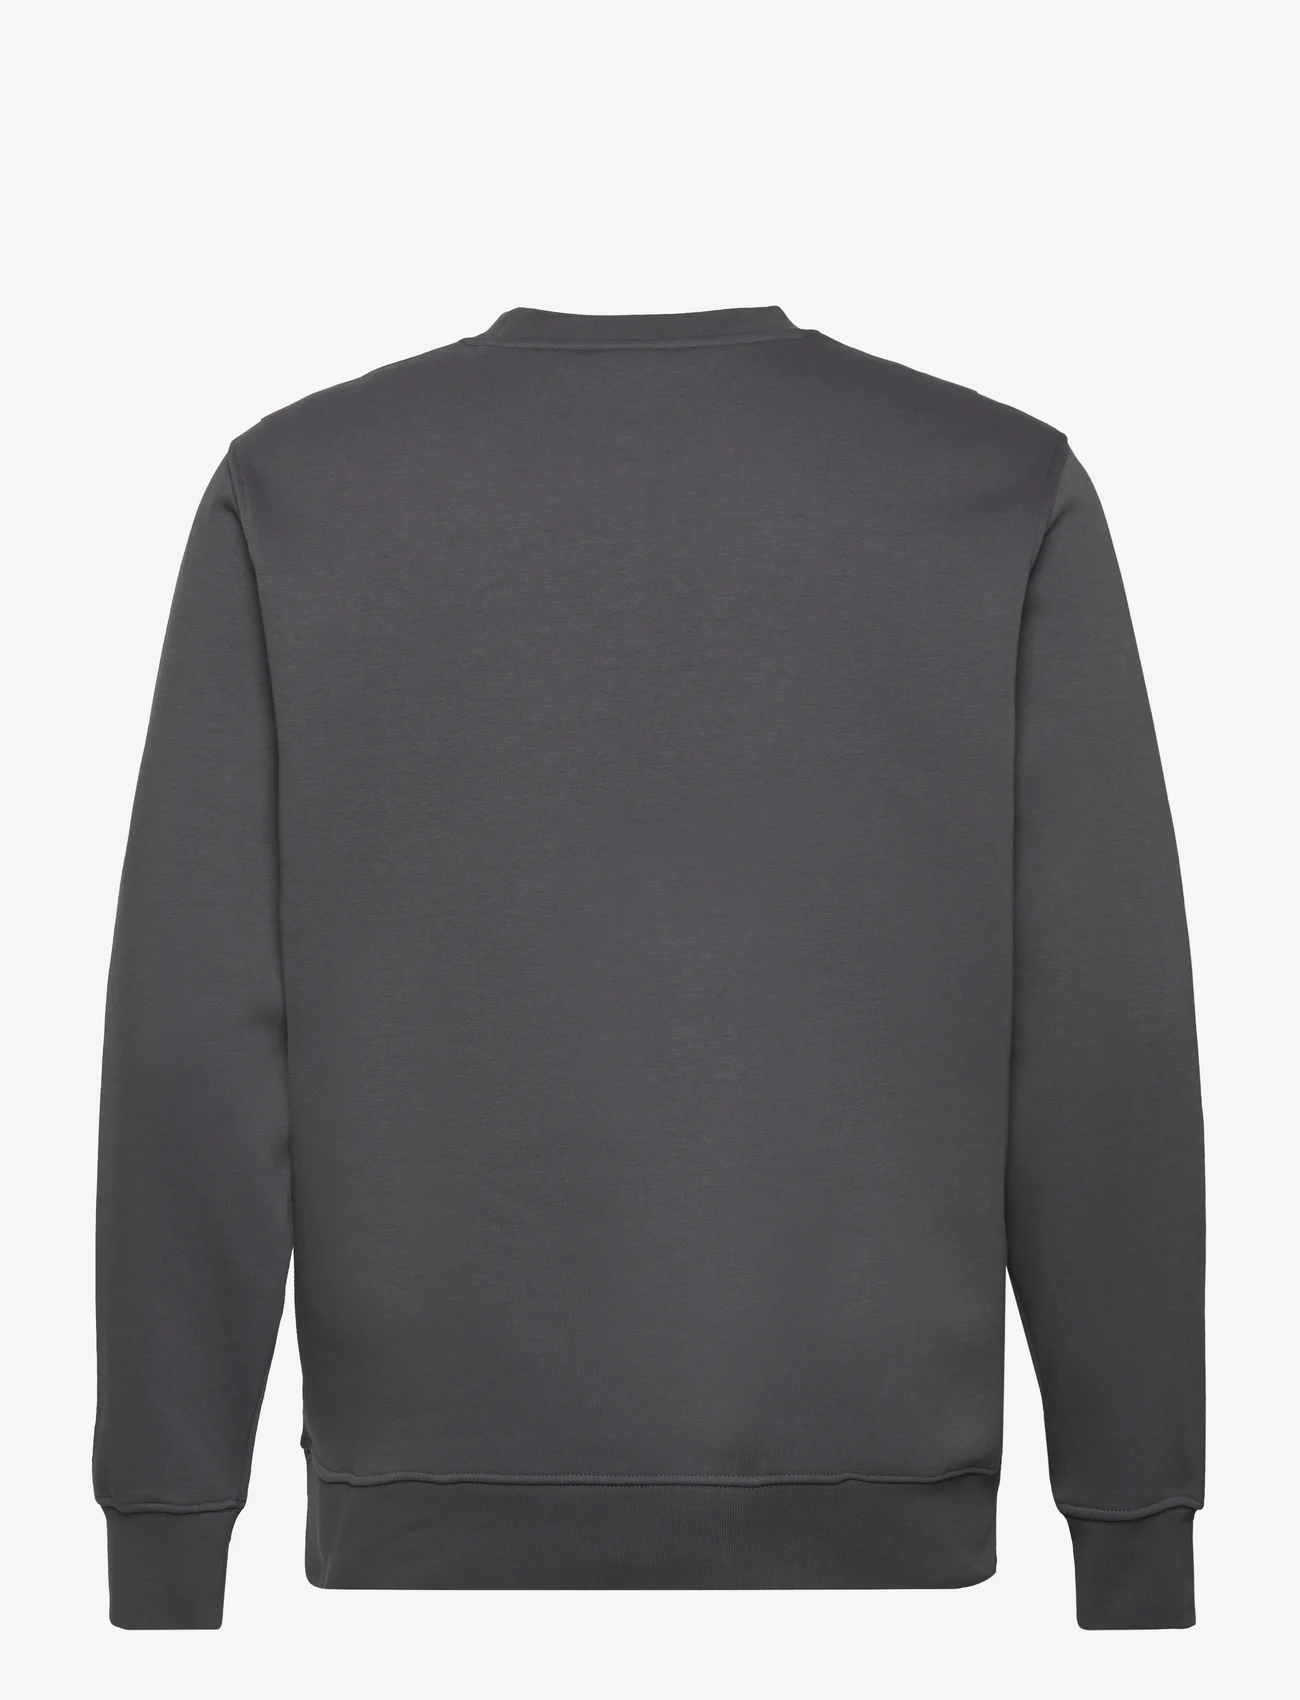 Mango - Lightweight cotton sweatshirt - laveste priser - dark grey - 1